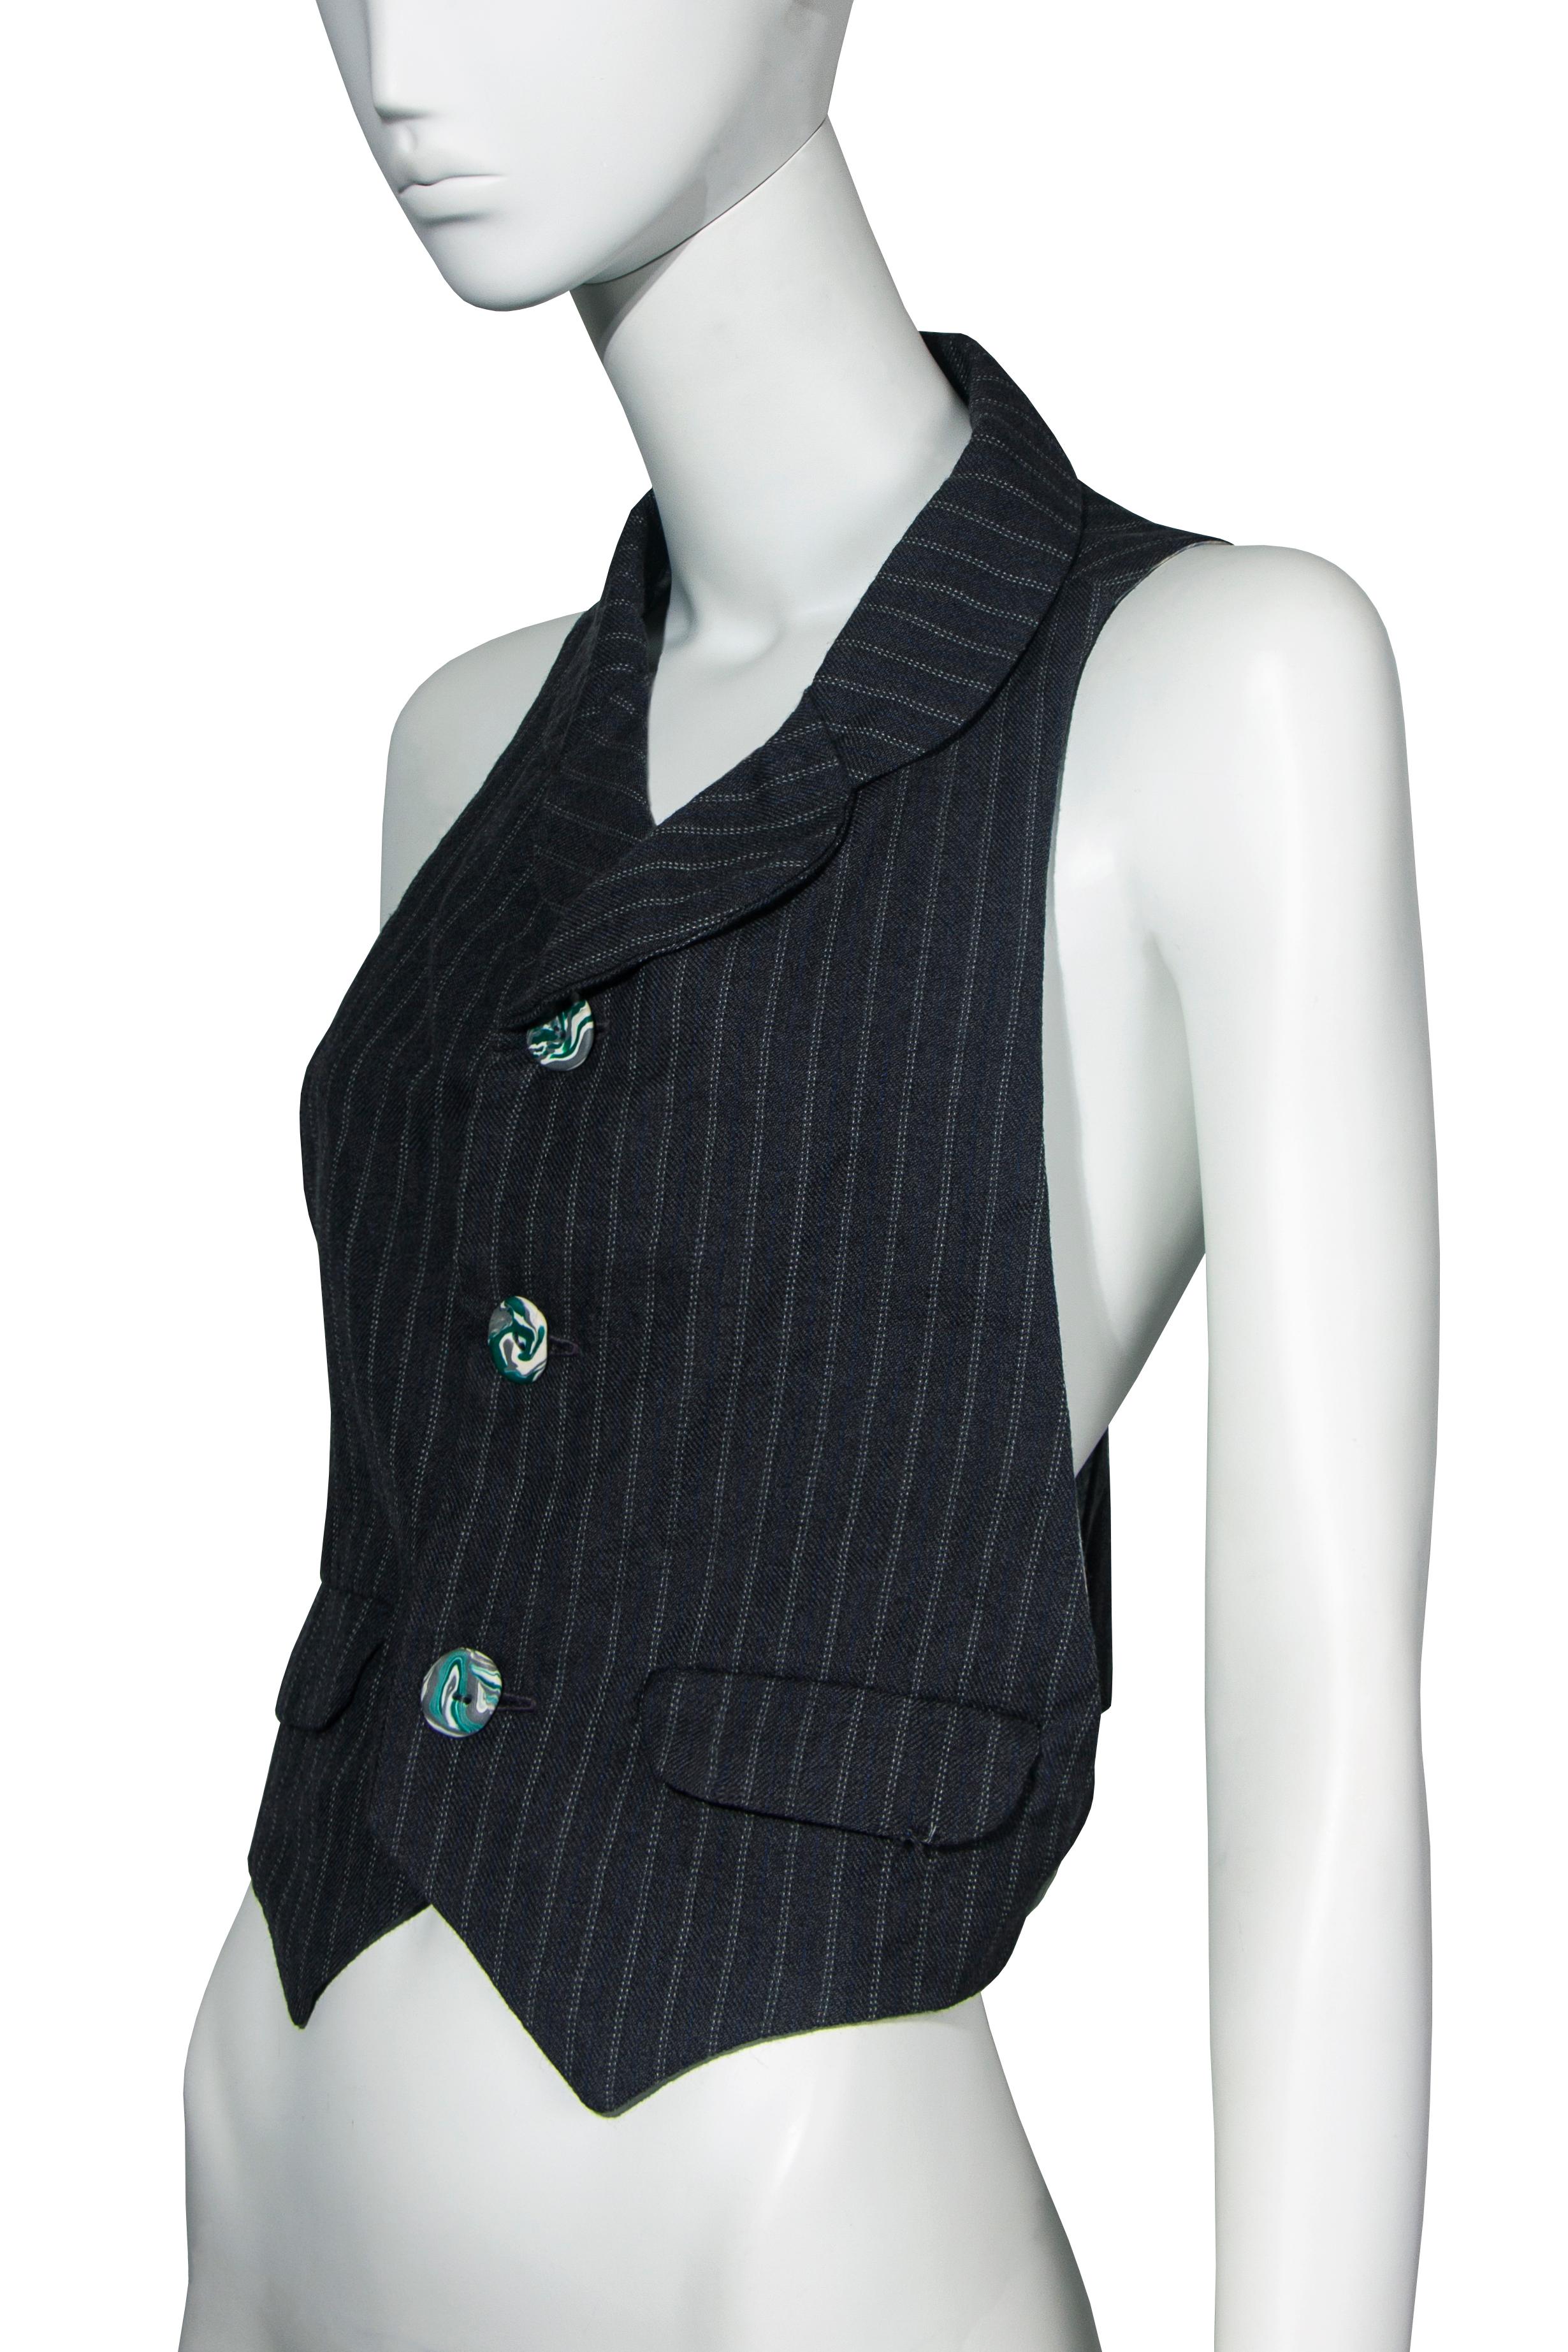 Women's John Galliano 'Fallen Angels' grey pinstripe vest, ss 1986 For Sale